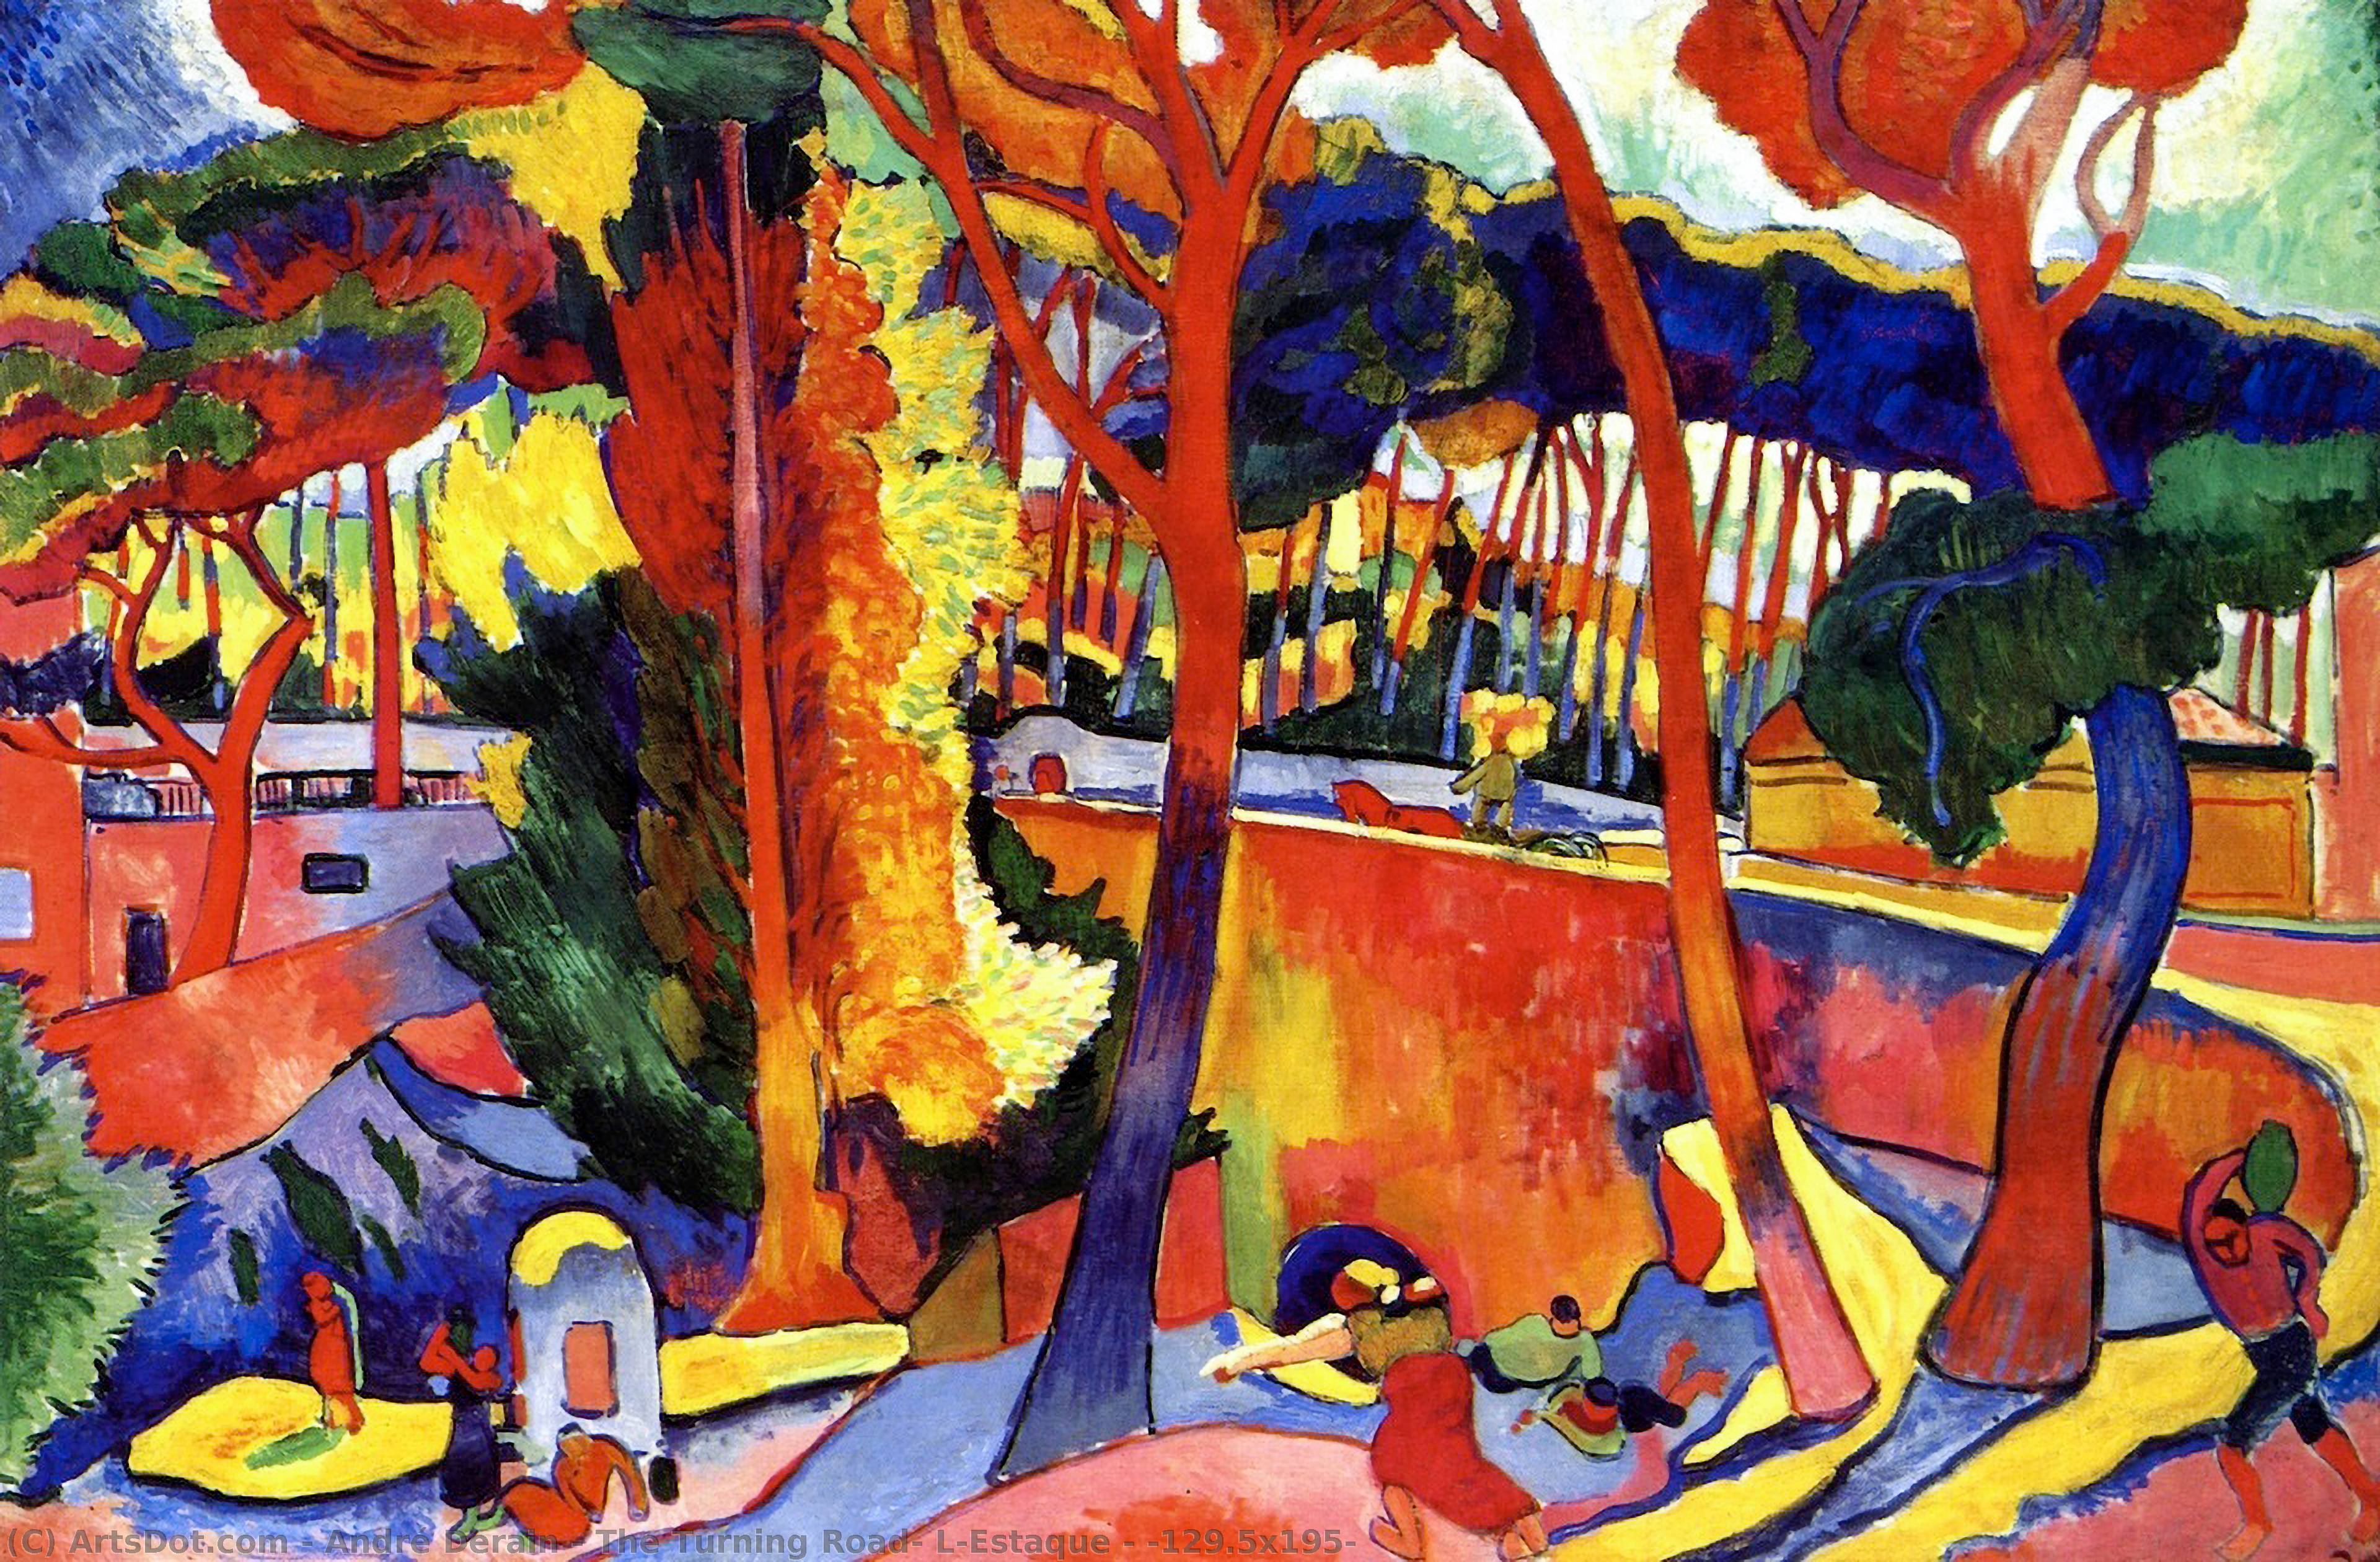 WikiOO.org - Enciclopedia of Fine Arts - Pictura, lucrări de artă André Derain - The Turning Road, L'Estaque - (129.5x195)